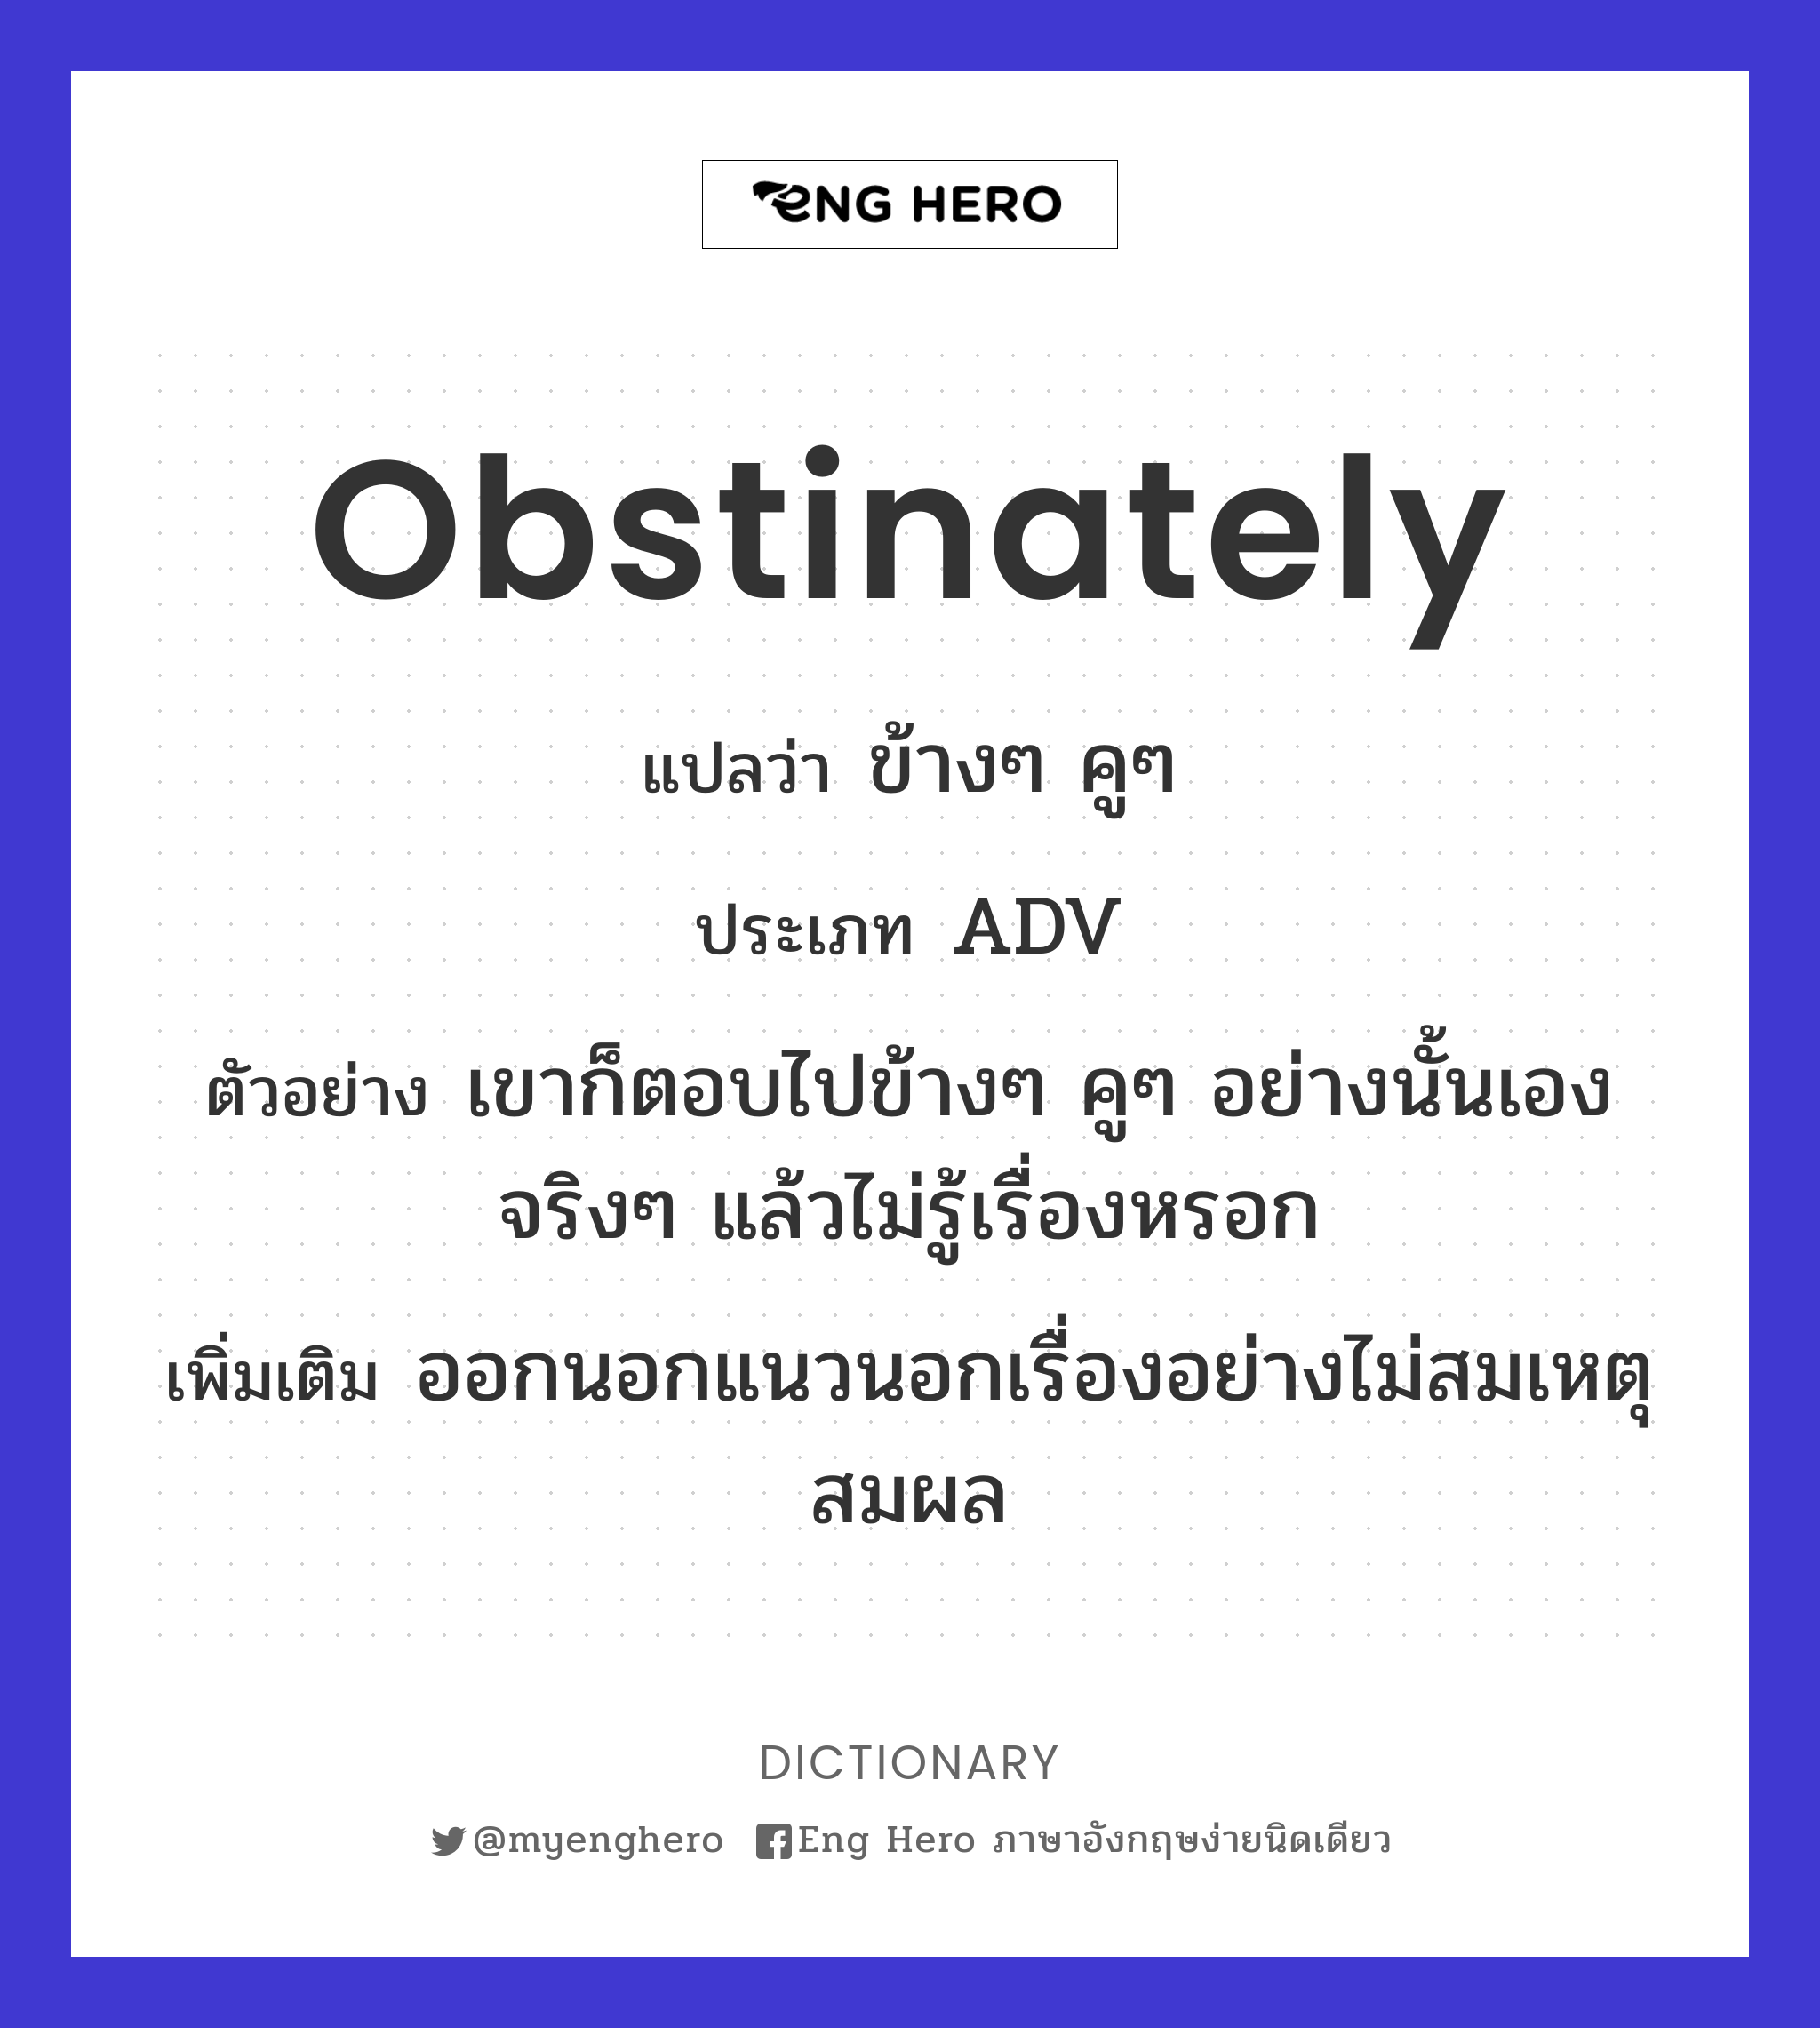 obstinately